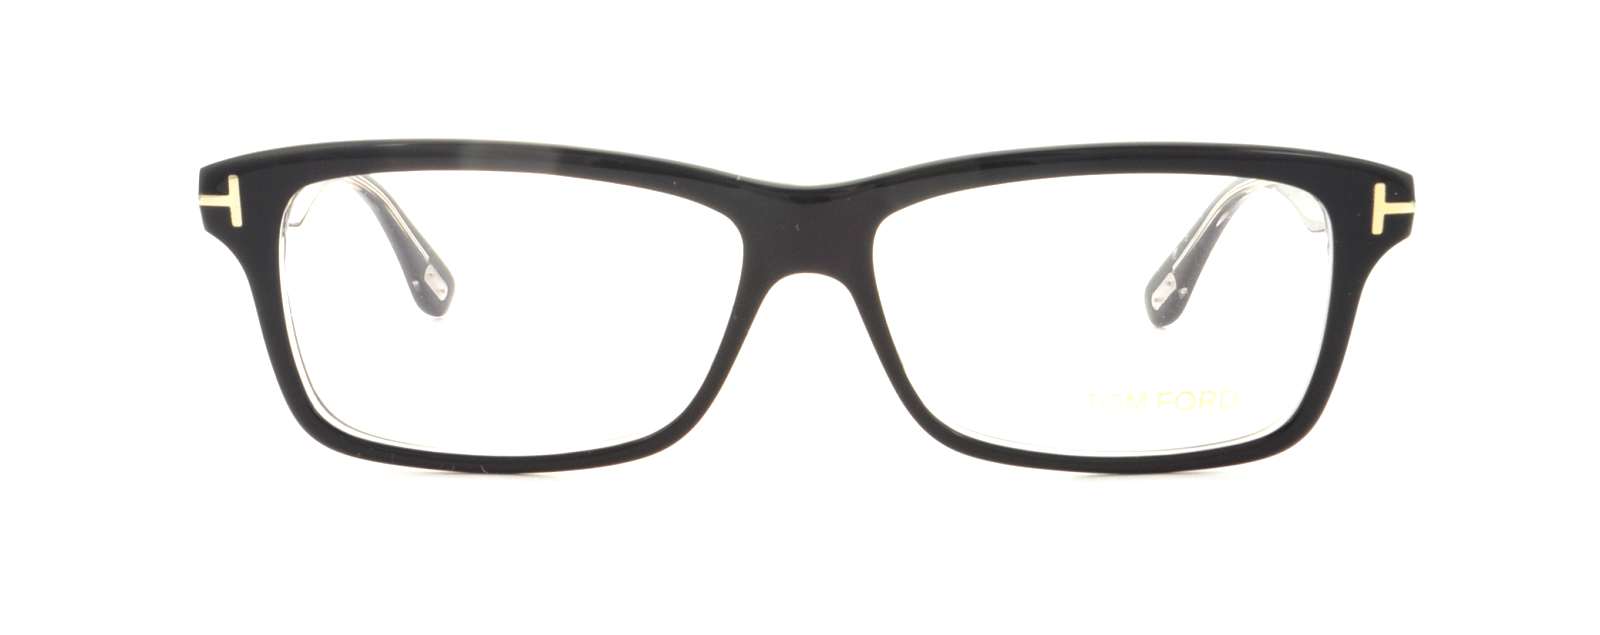 Designer Frames Outlet. Tom Ford Eyeglasses FT5146